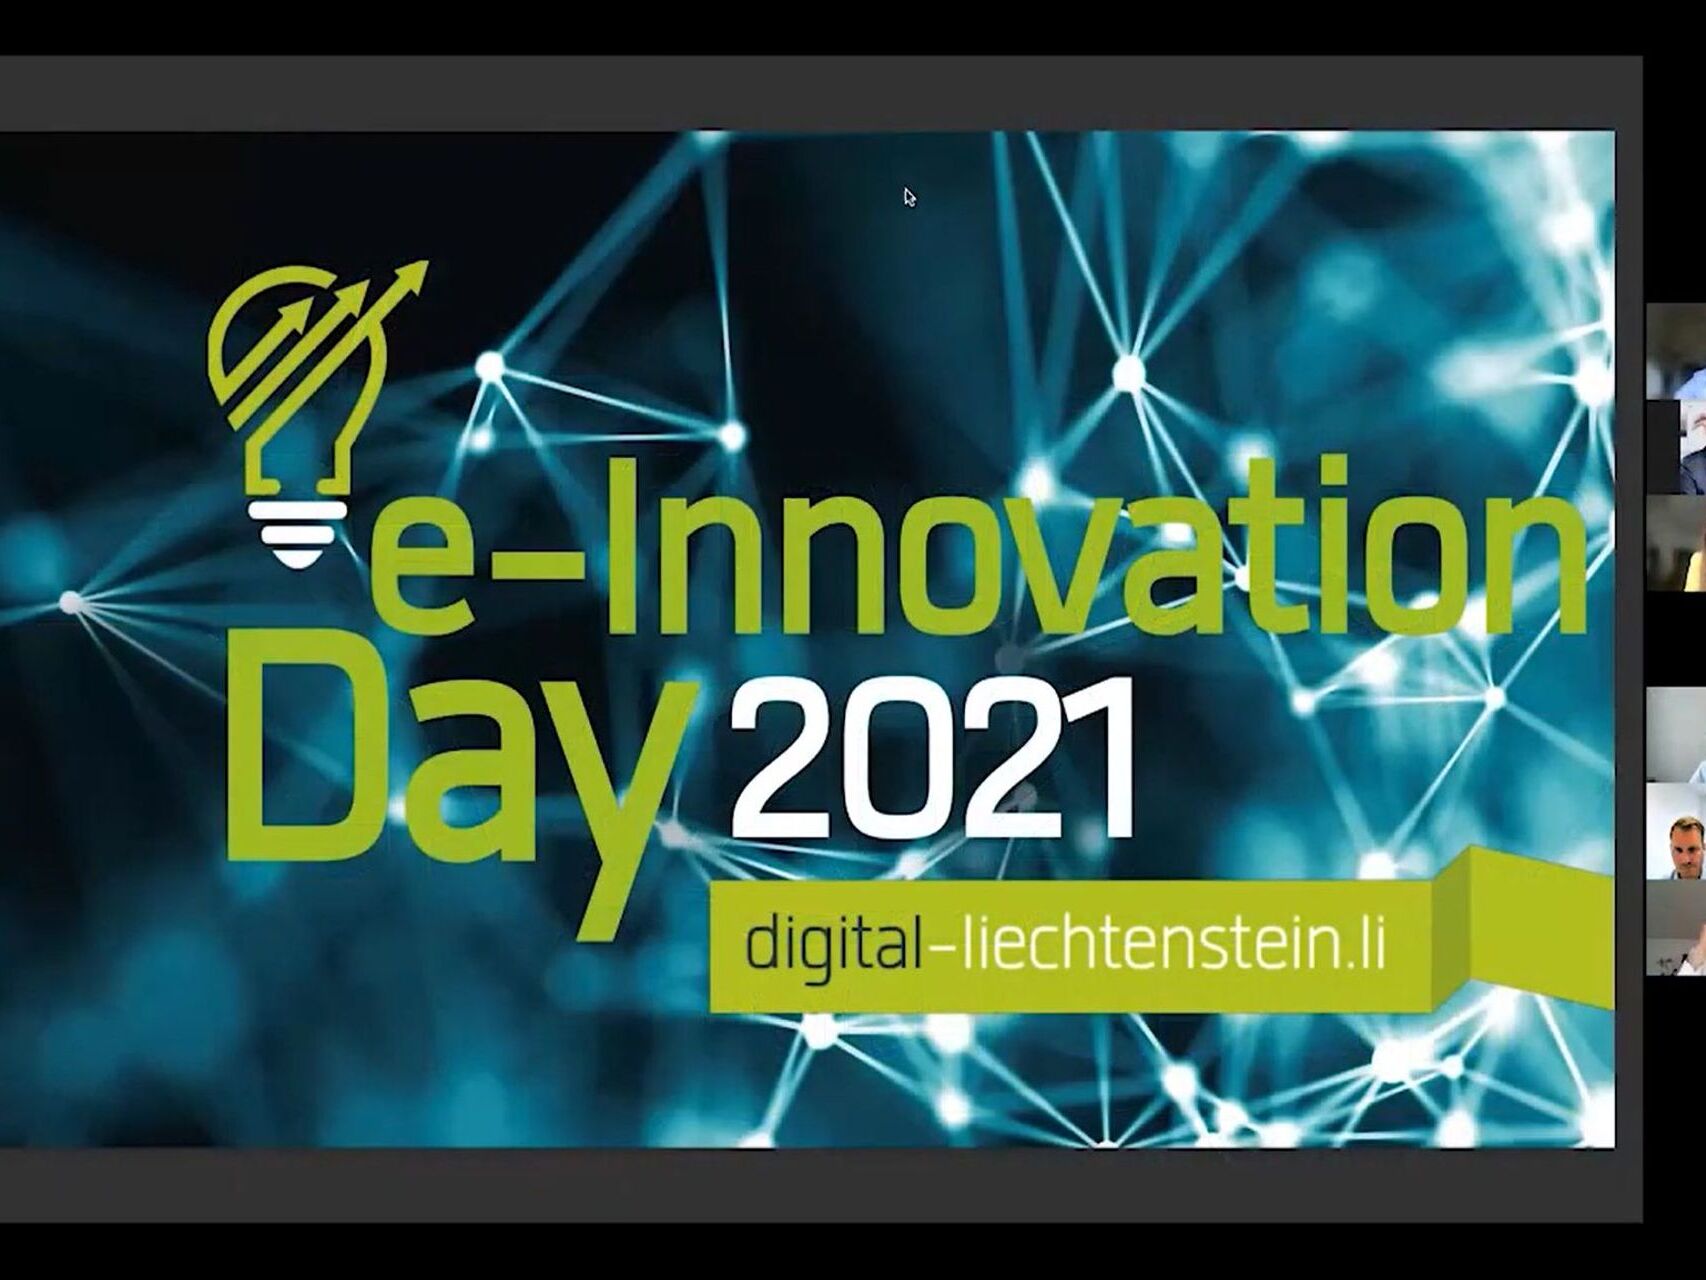 e-Innovation Day: een eerste kader van het webinar 'e-Innovation' Liechtenstein 2021